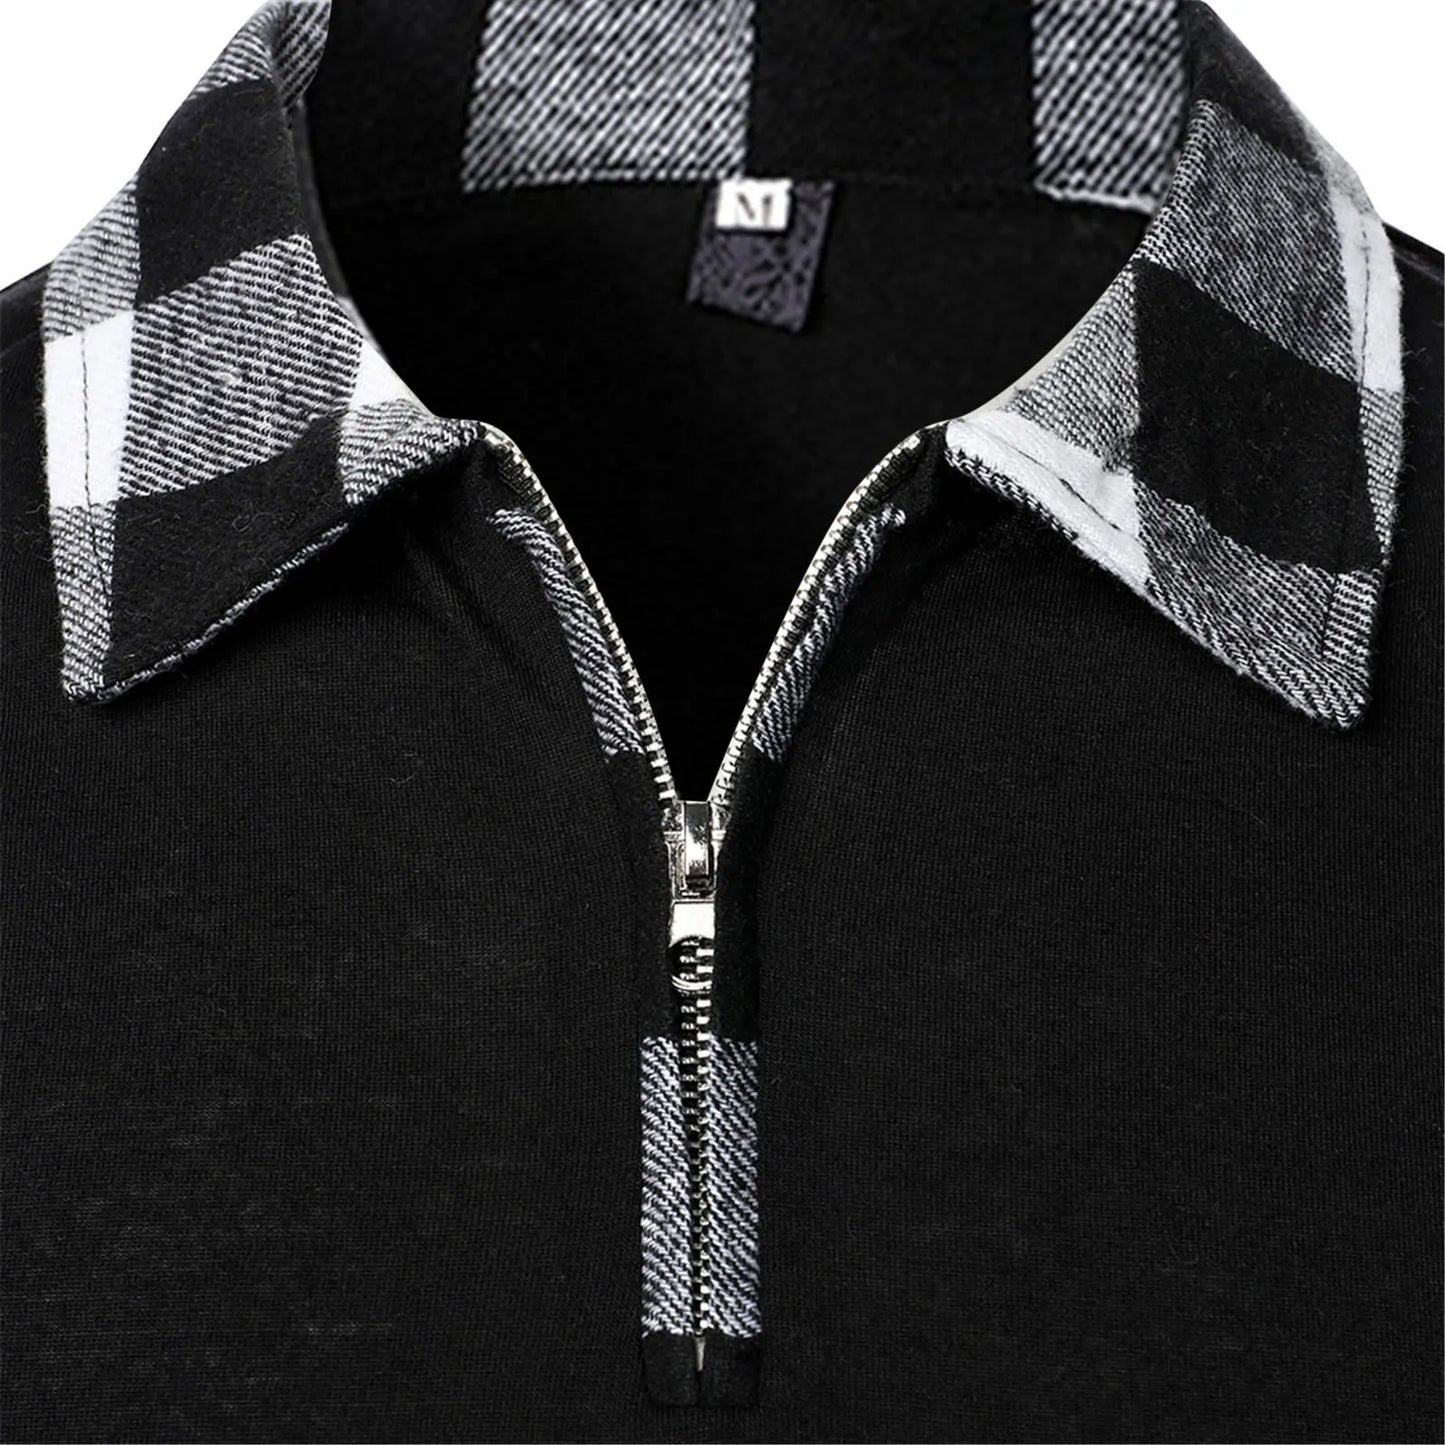 Men's Lapel Zipper Shirt Long Sleeve Business Pullover